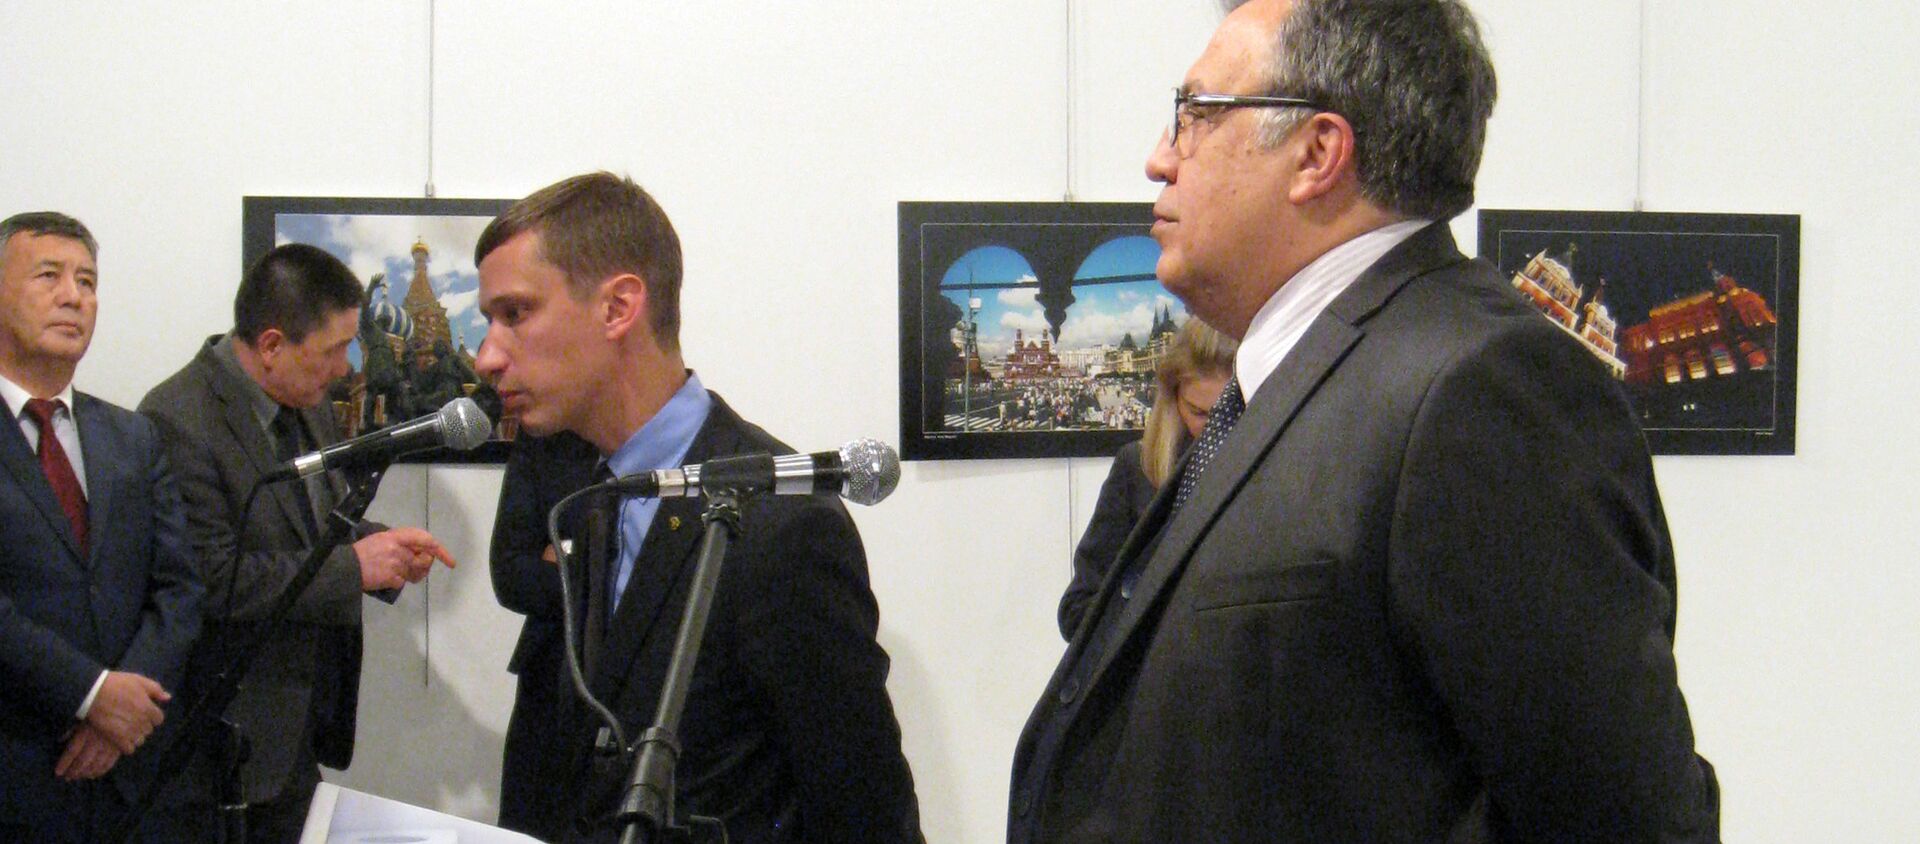 Посол России в Турции Андрей Карлов на выставке в Анкаре - Sputnik Таджикистан, 1920, 04.01.2017